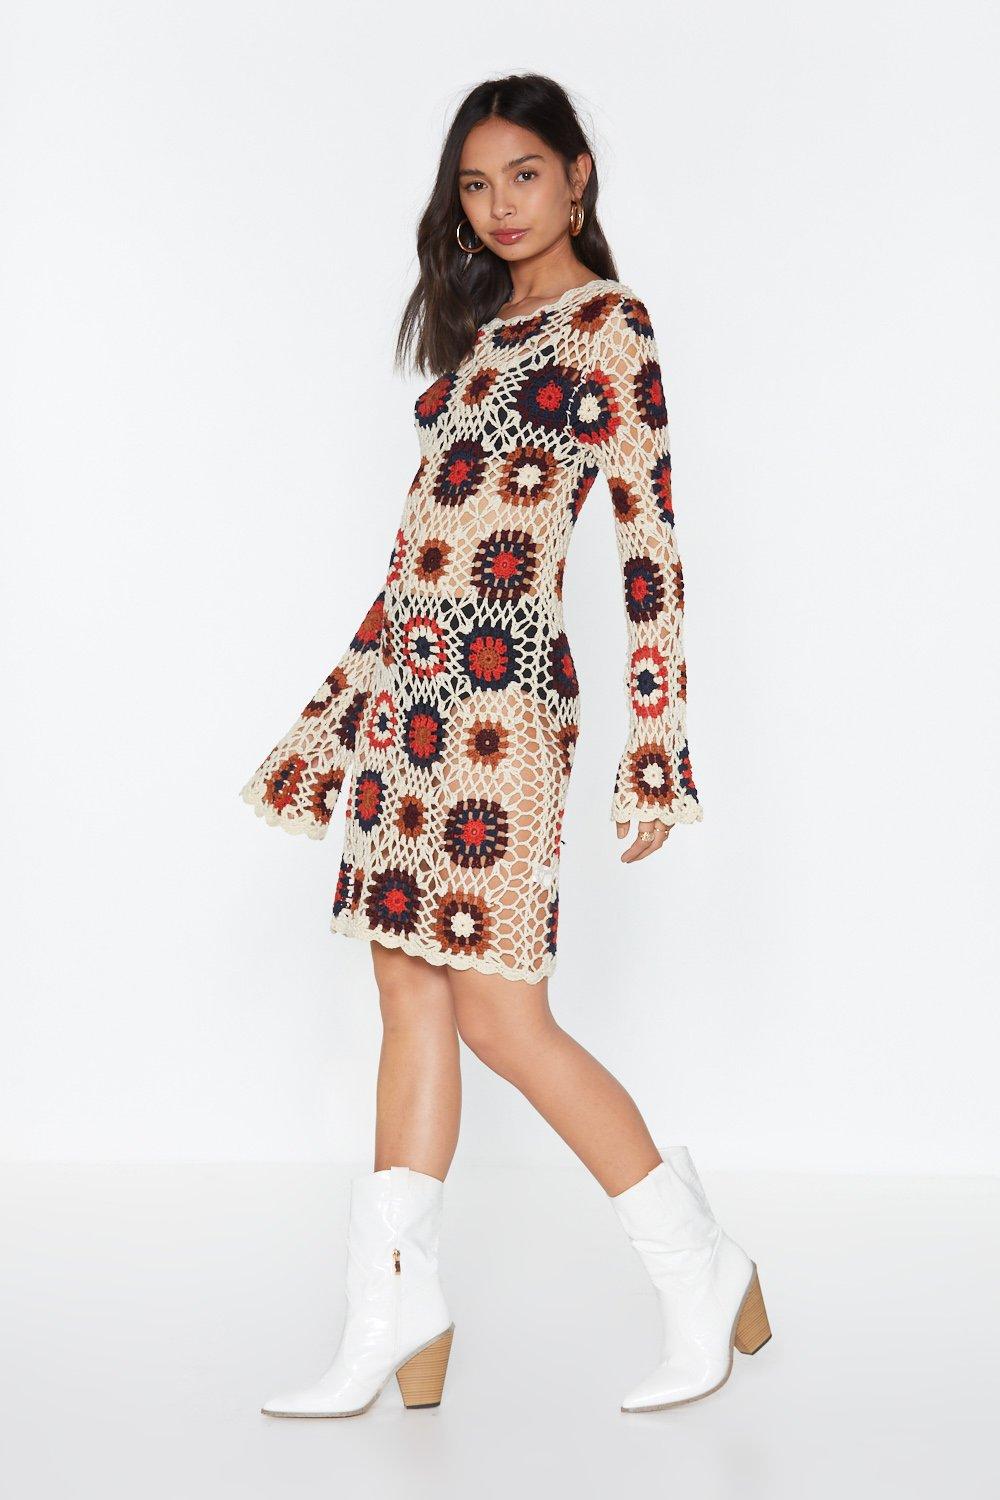 No Way Crochet Patterned Mini Dress ...